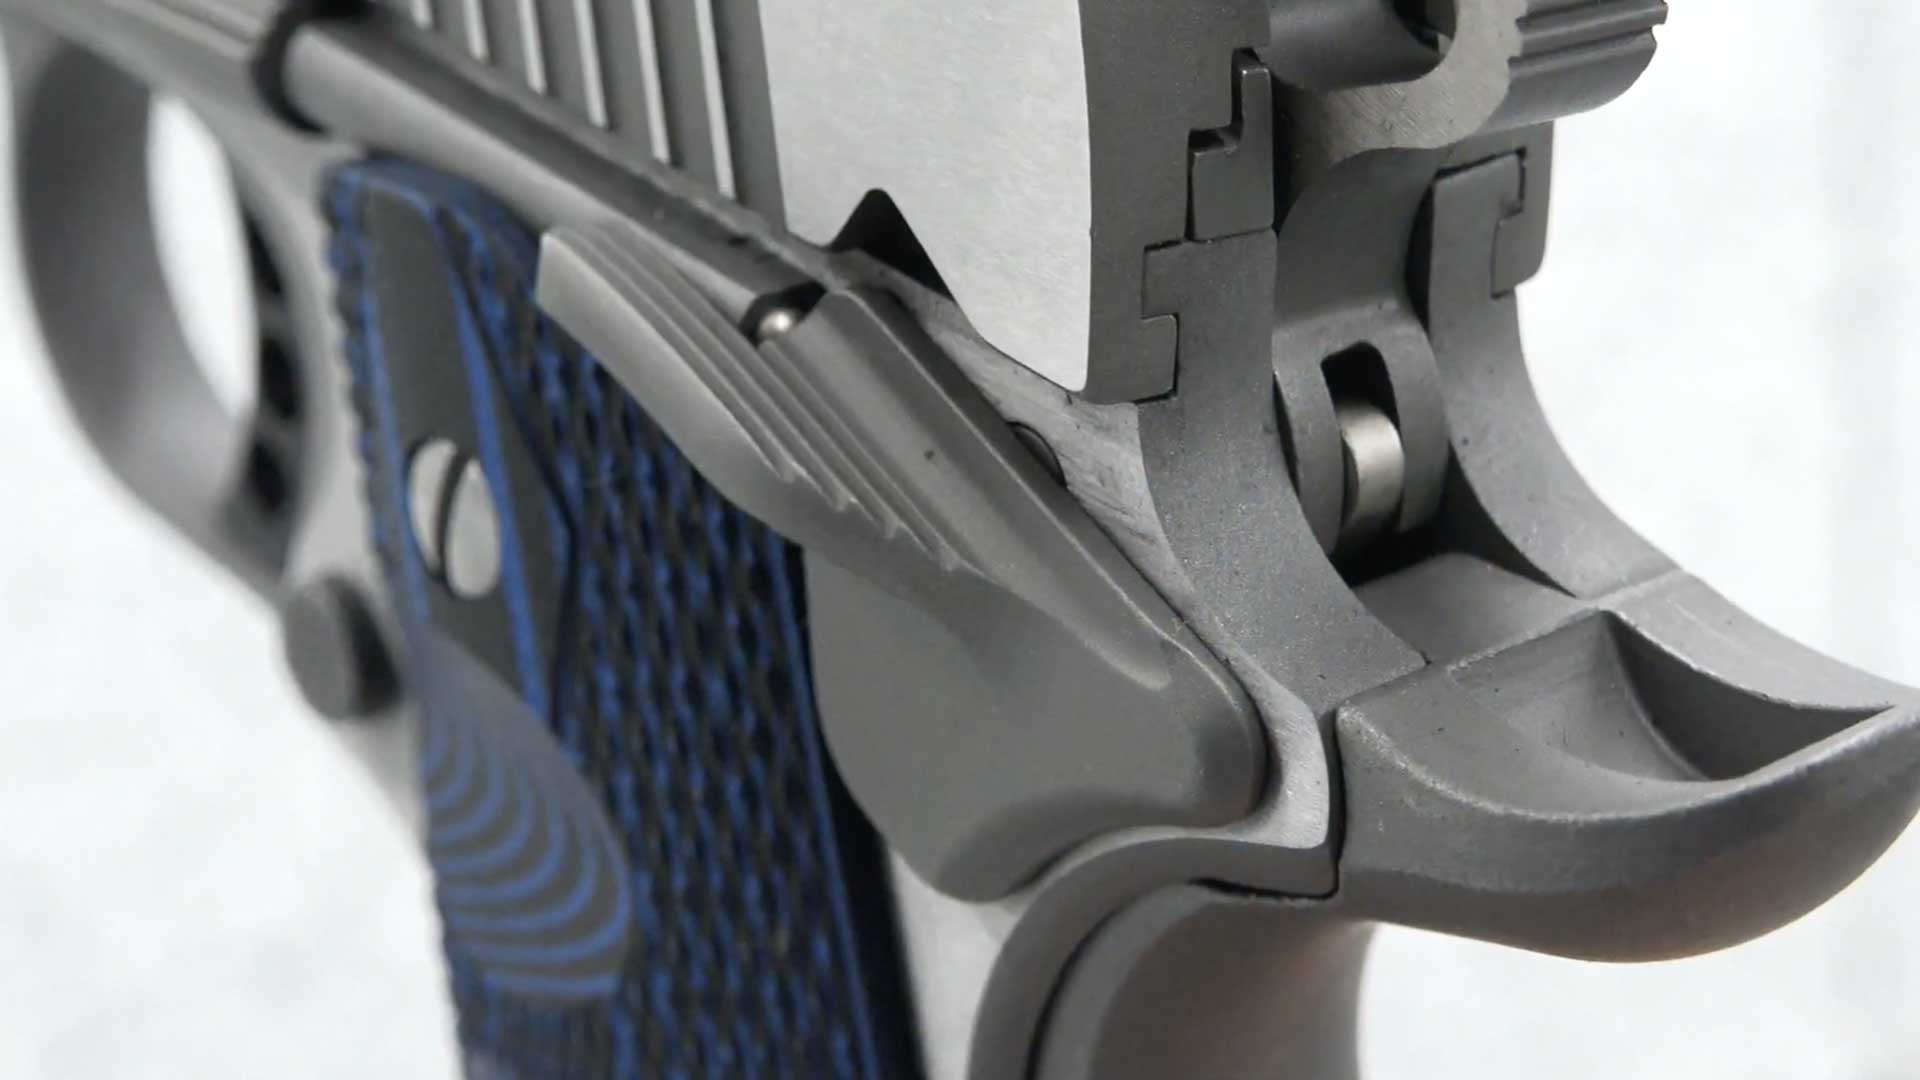 1911 gun parts pistol handgun blue grip metal stainless steel colt